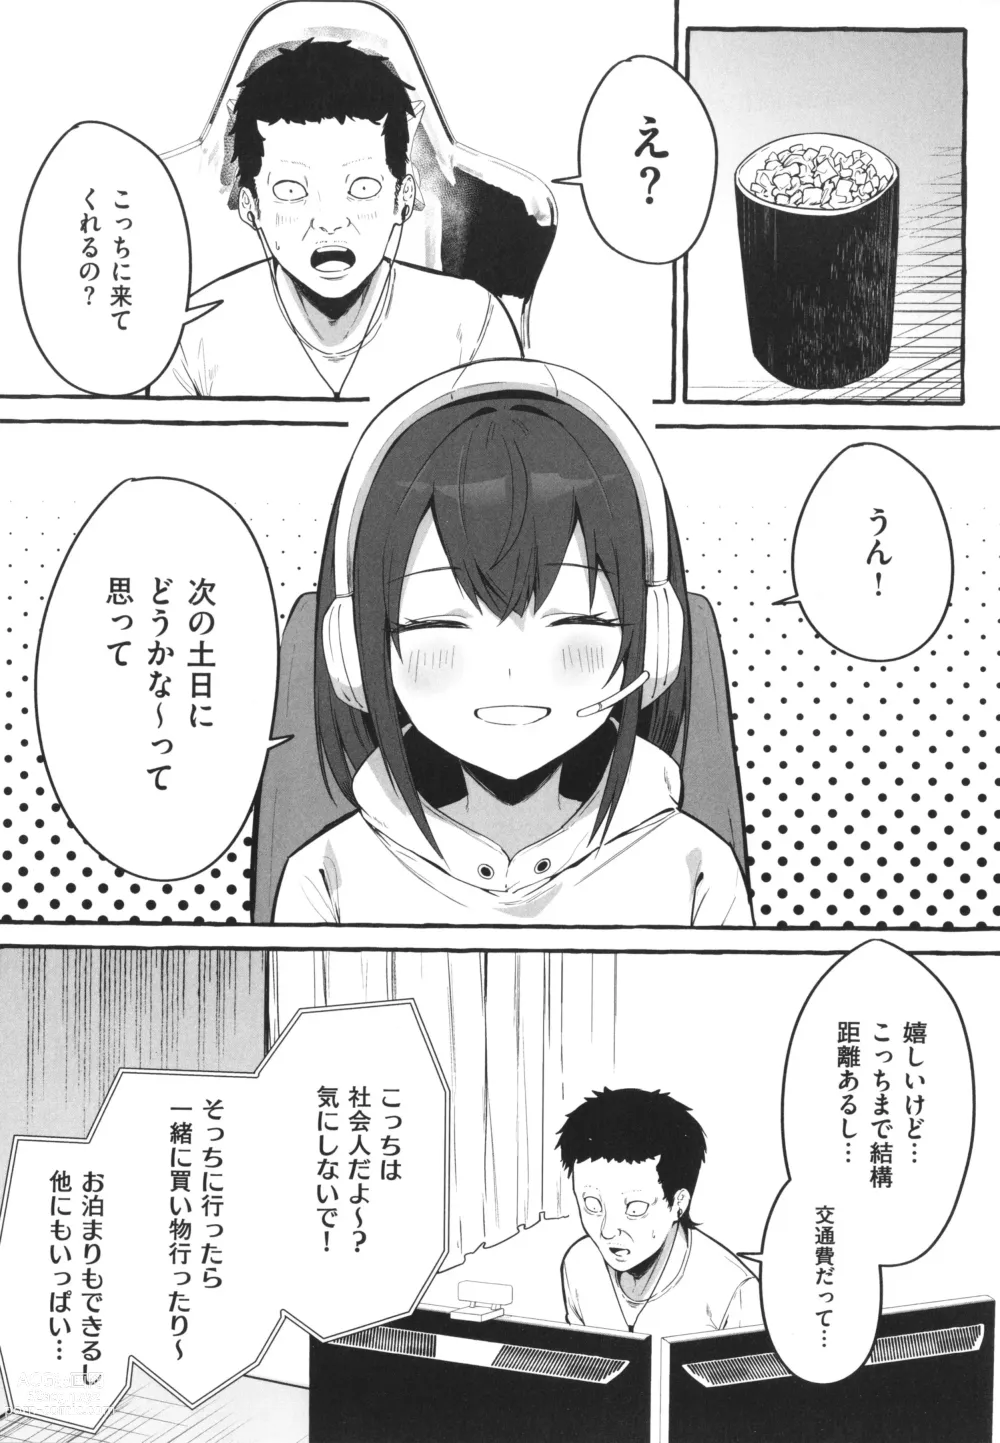 Page 17 of manga #Junai Kanojo